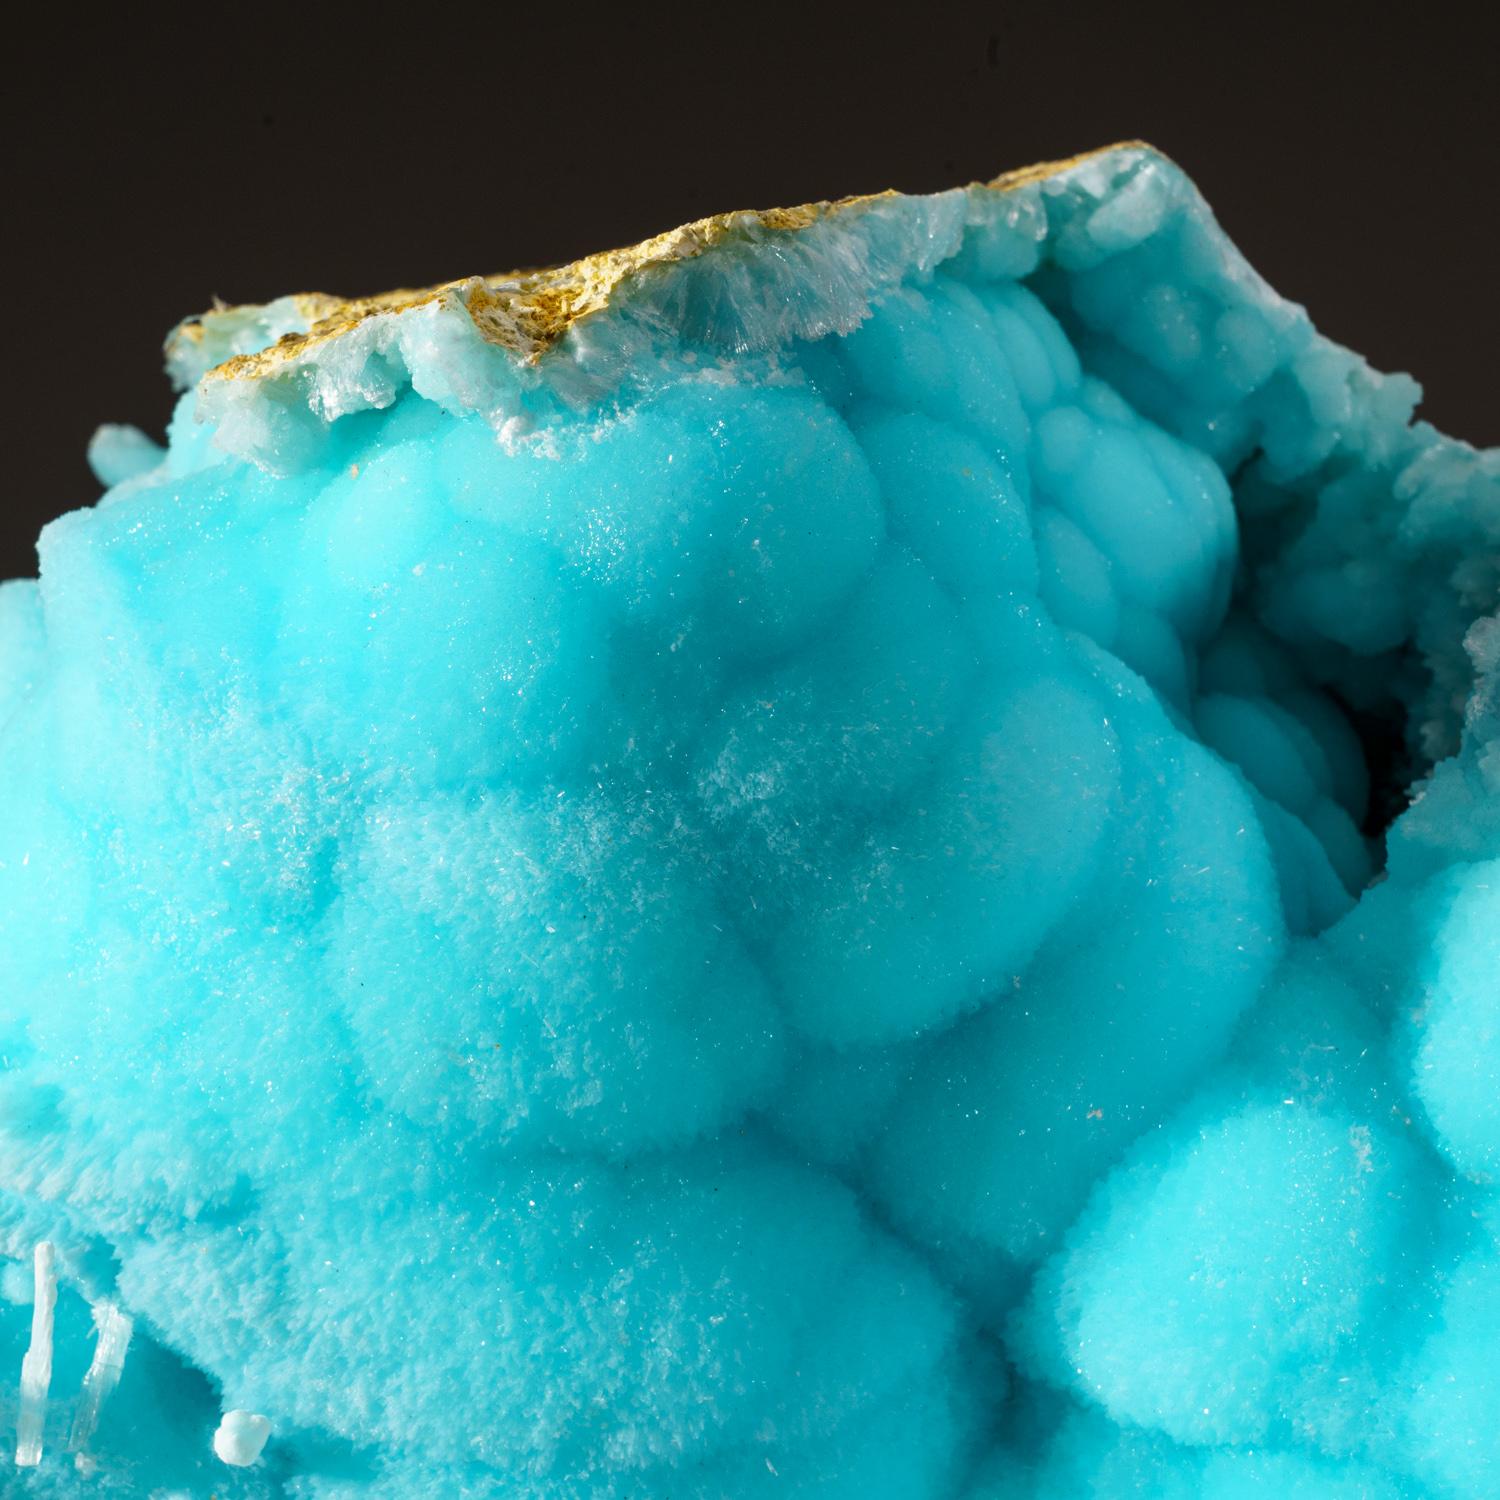 Grande formation botyroïde d'hémimorphite translucide bleu poudre sur matrice. L'hémimorphite présente une surface scintillante composée de faces cristallines microscopiques qui lui confèrent un éclat étincelant.

 

Poids : 11.6 lbs, Taille : 10 x